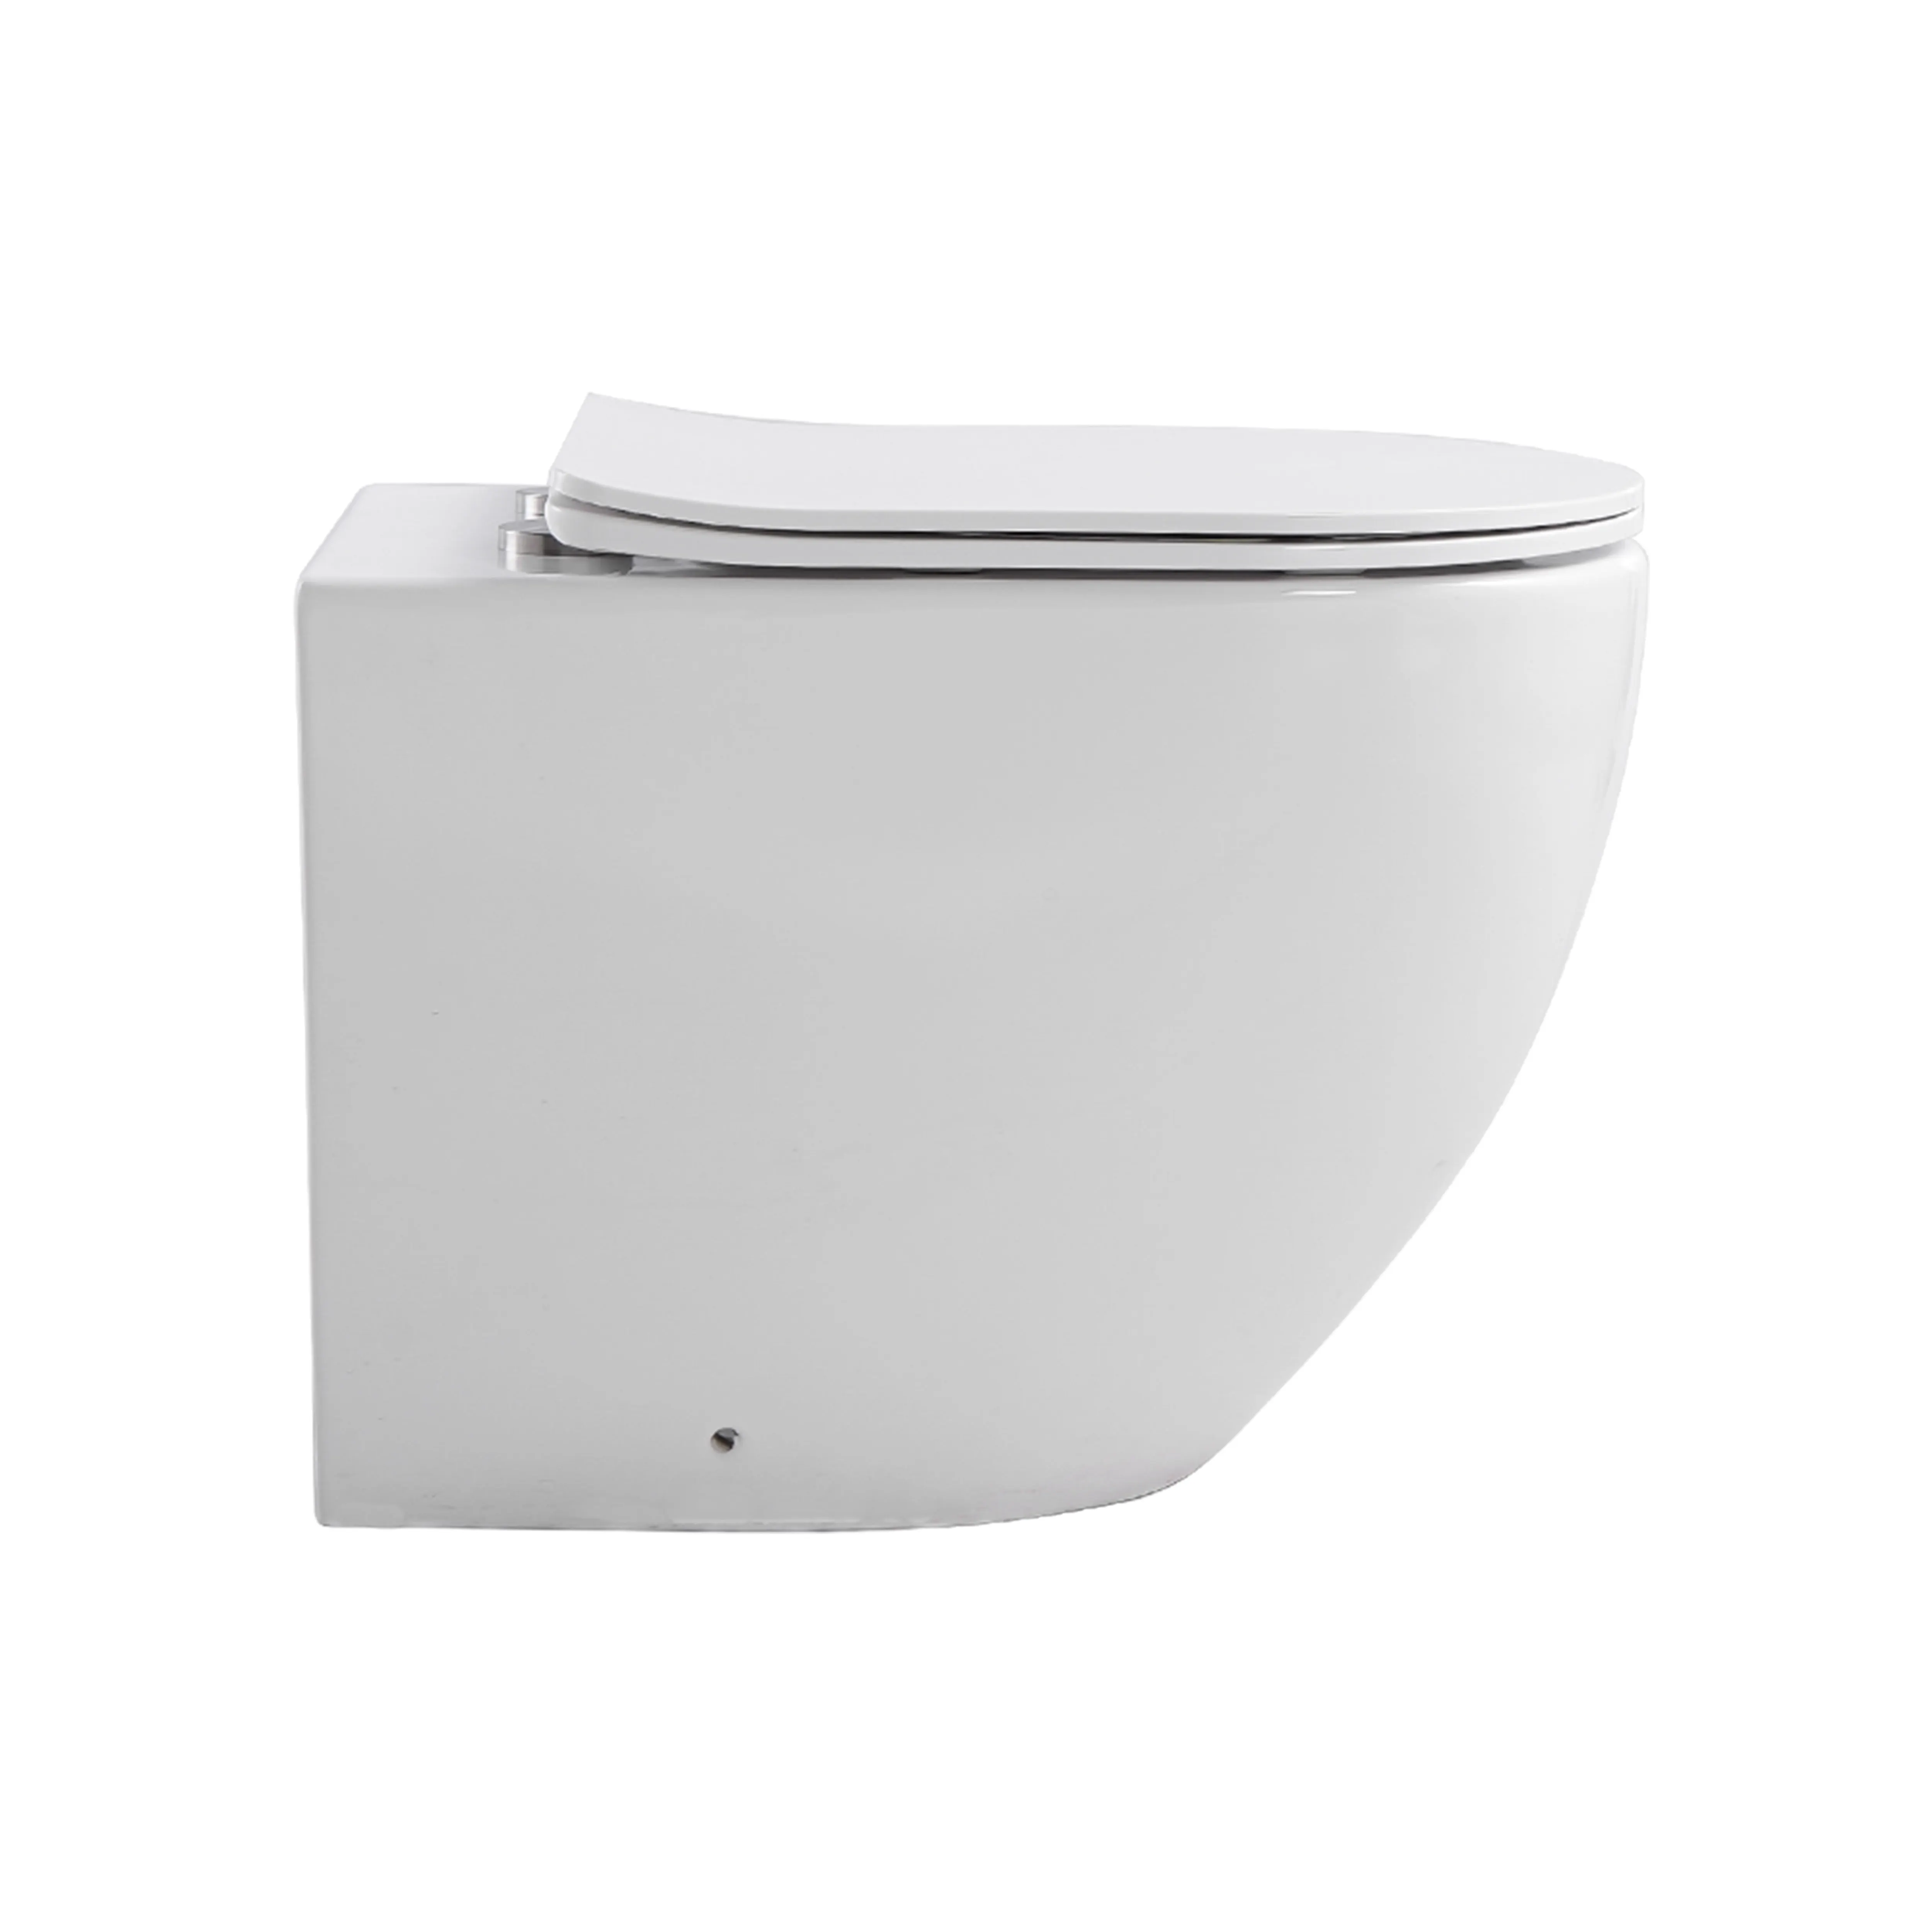 Dinding CE Eropa tanpa bingkai dinding terpasang warna putih keramik wc dinding kamar mandi toilet gantung dengan tangki air tersembunyi